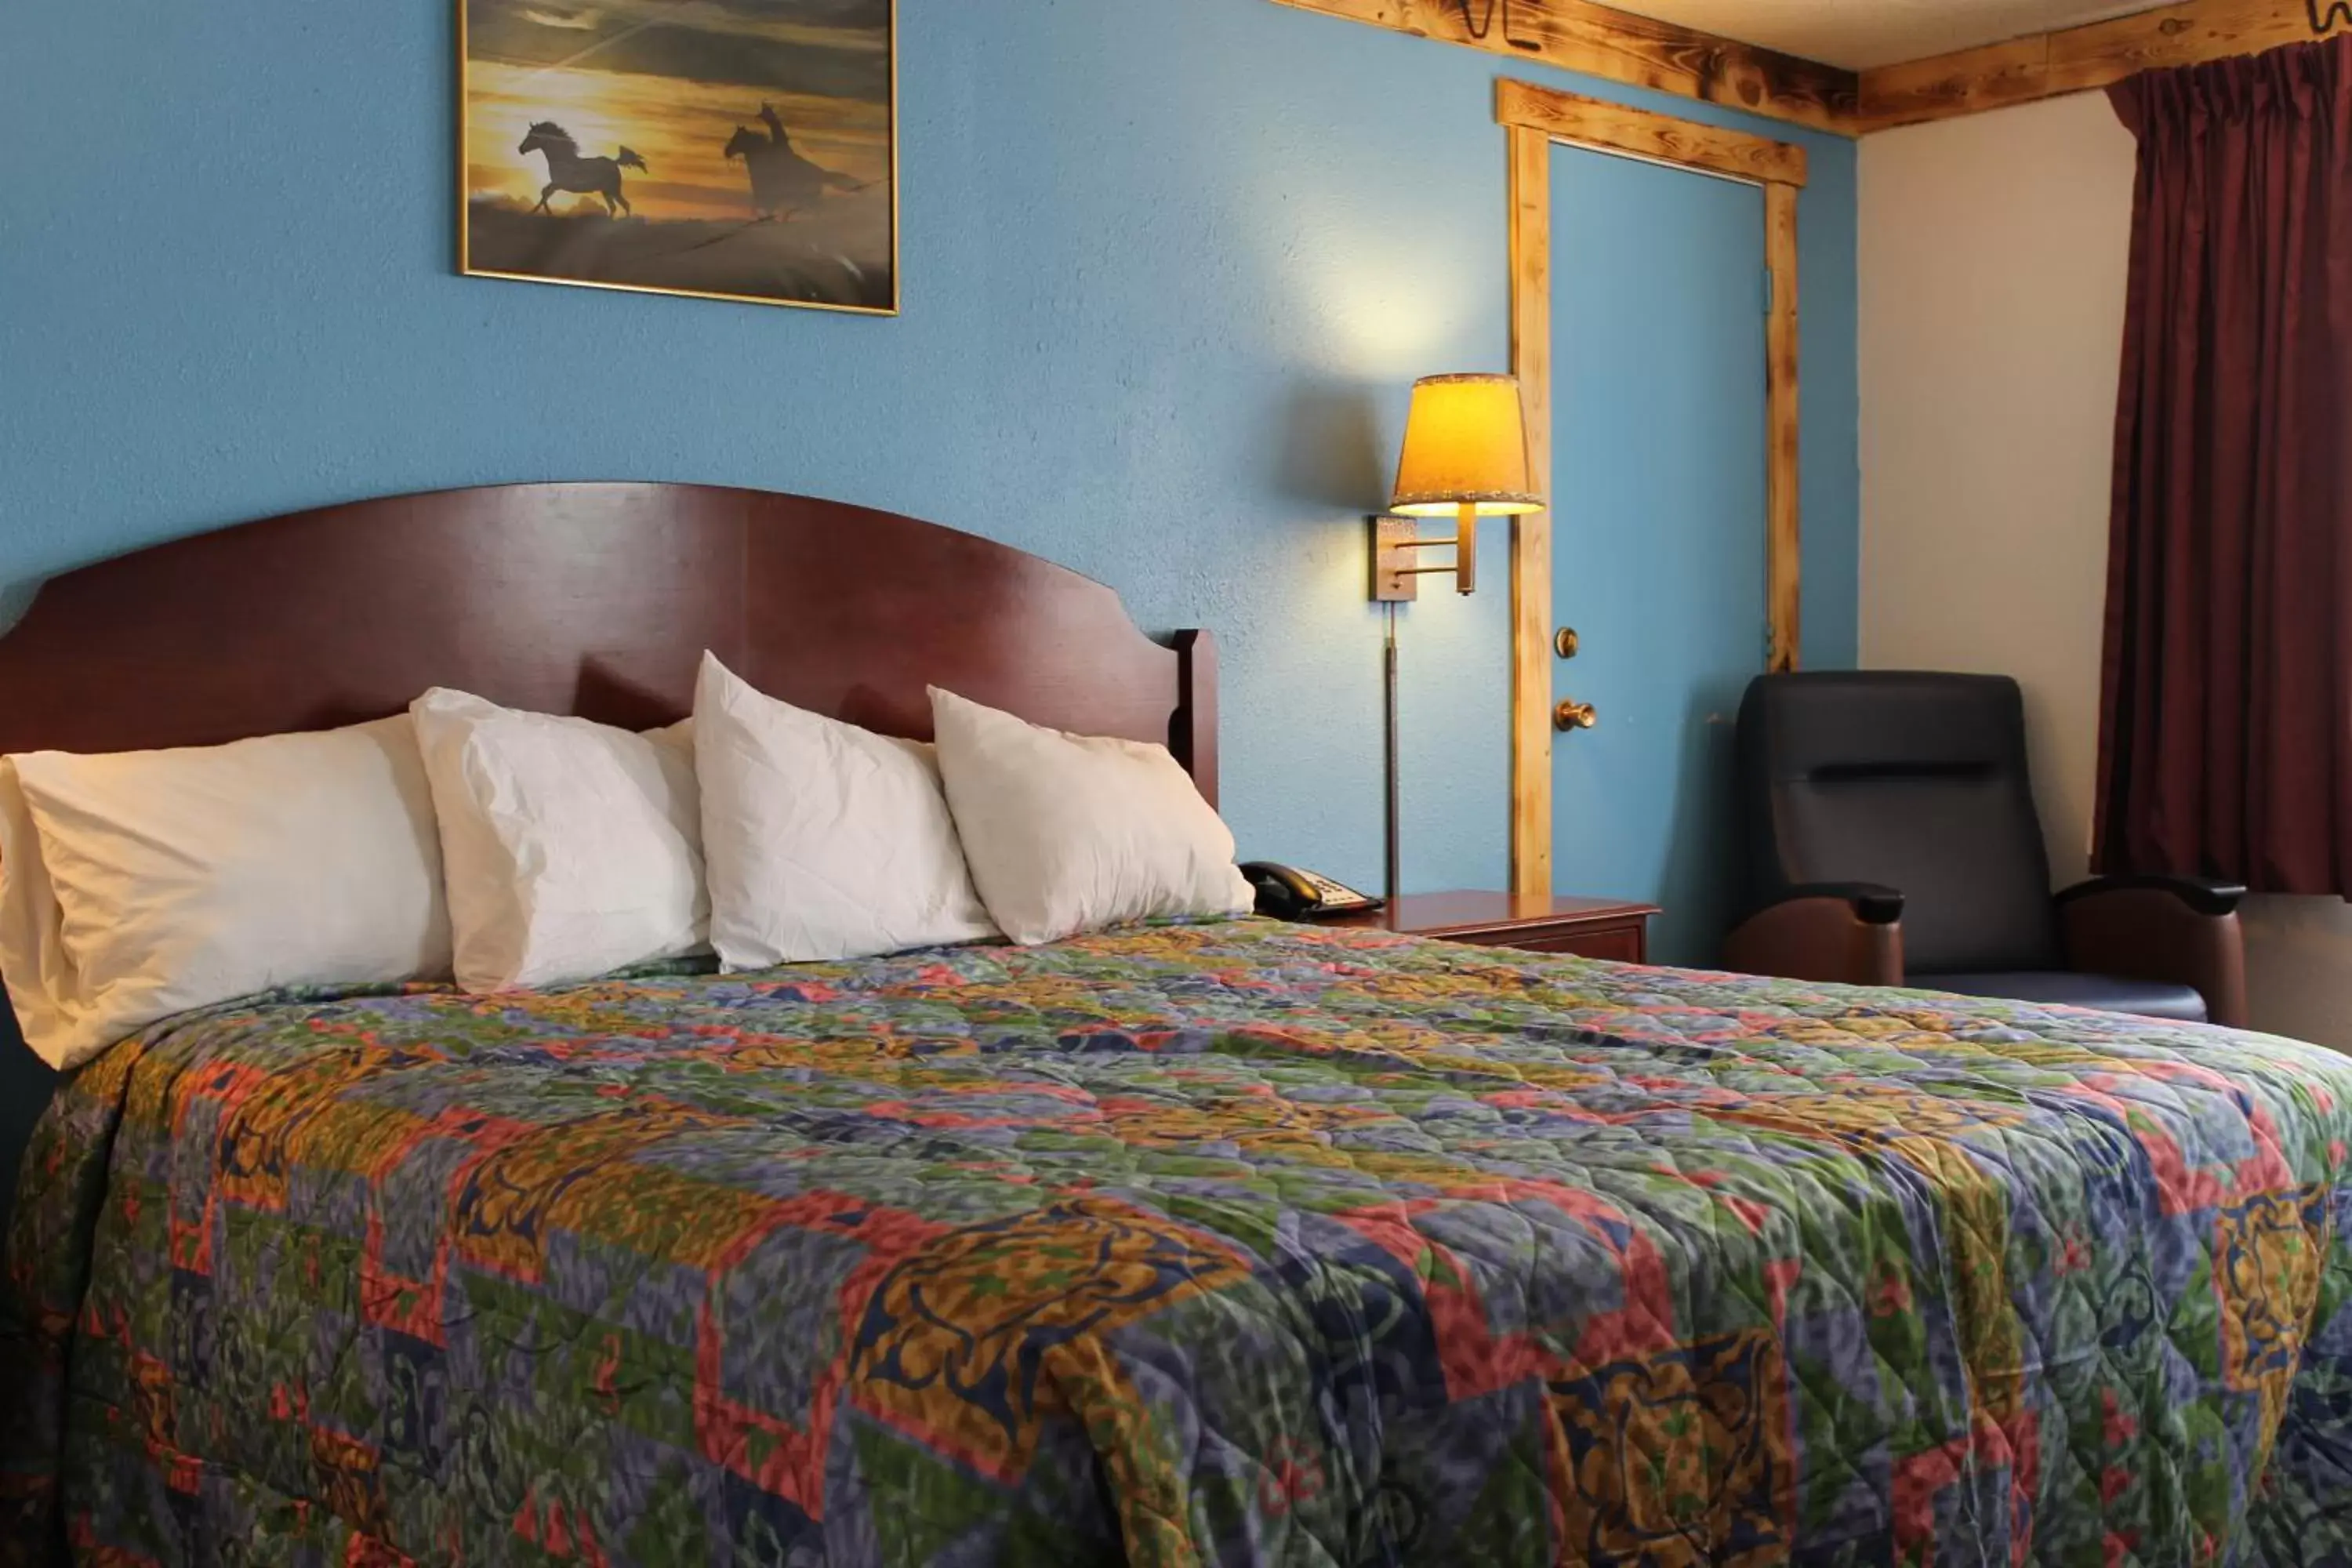 Bed in Wyatt Earp Hotel